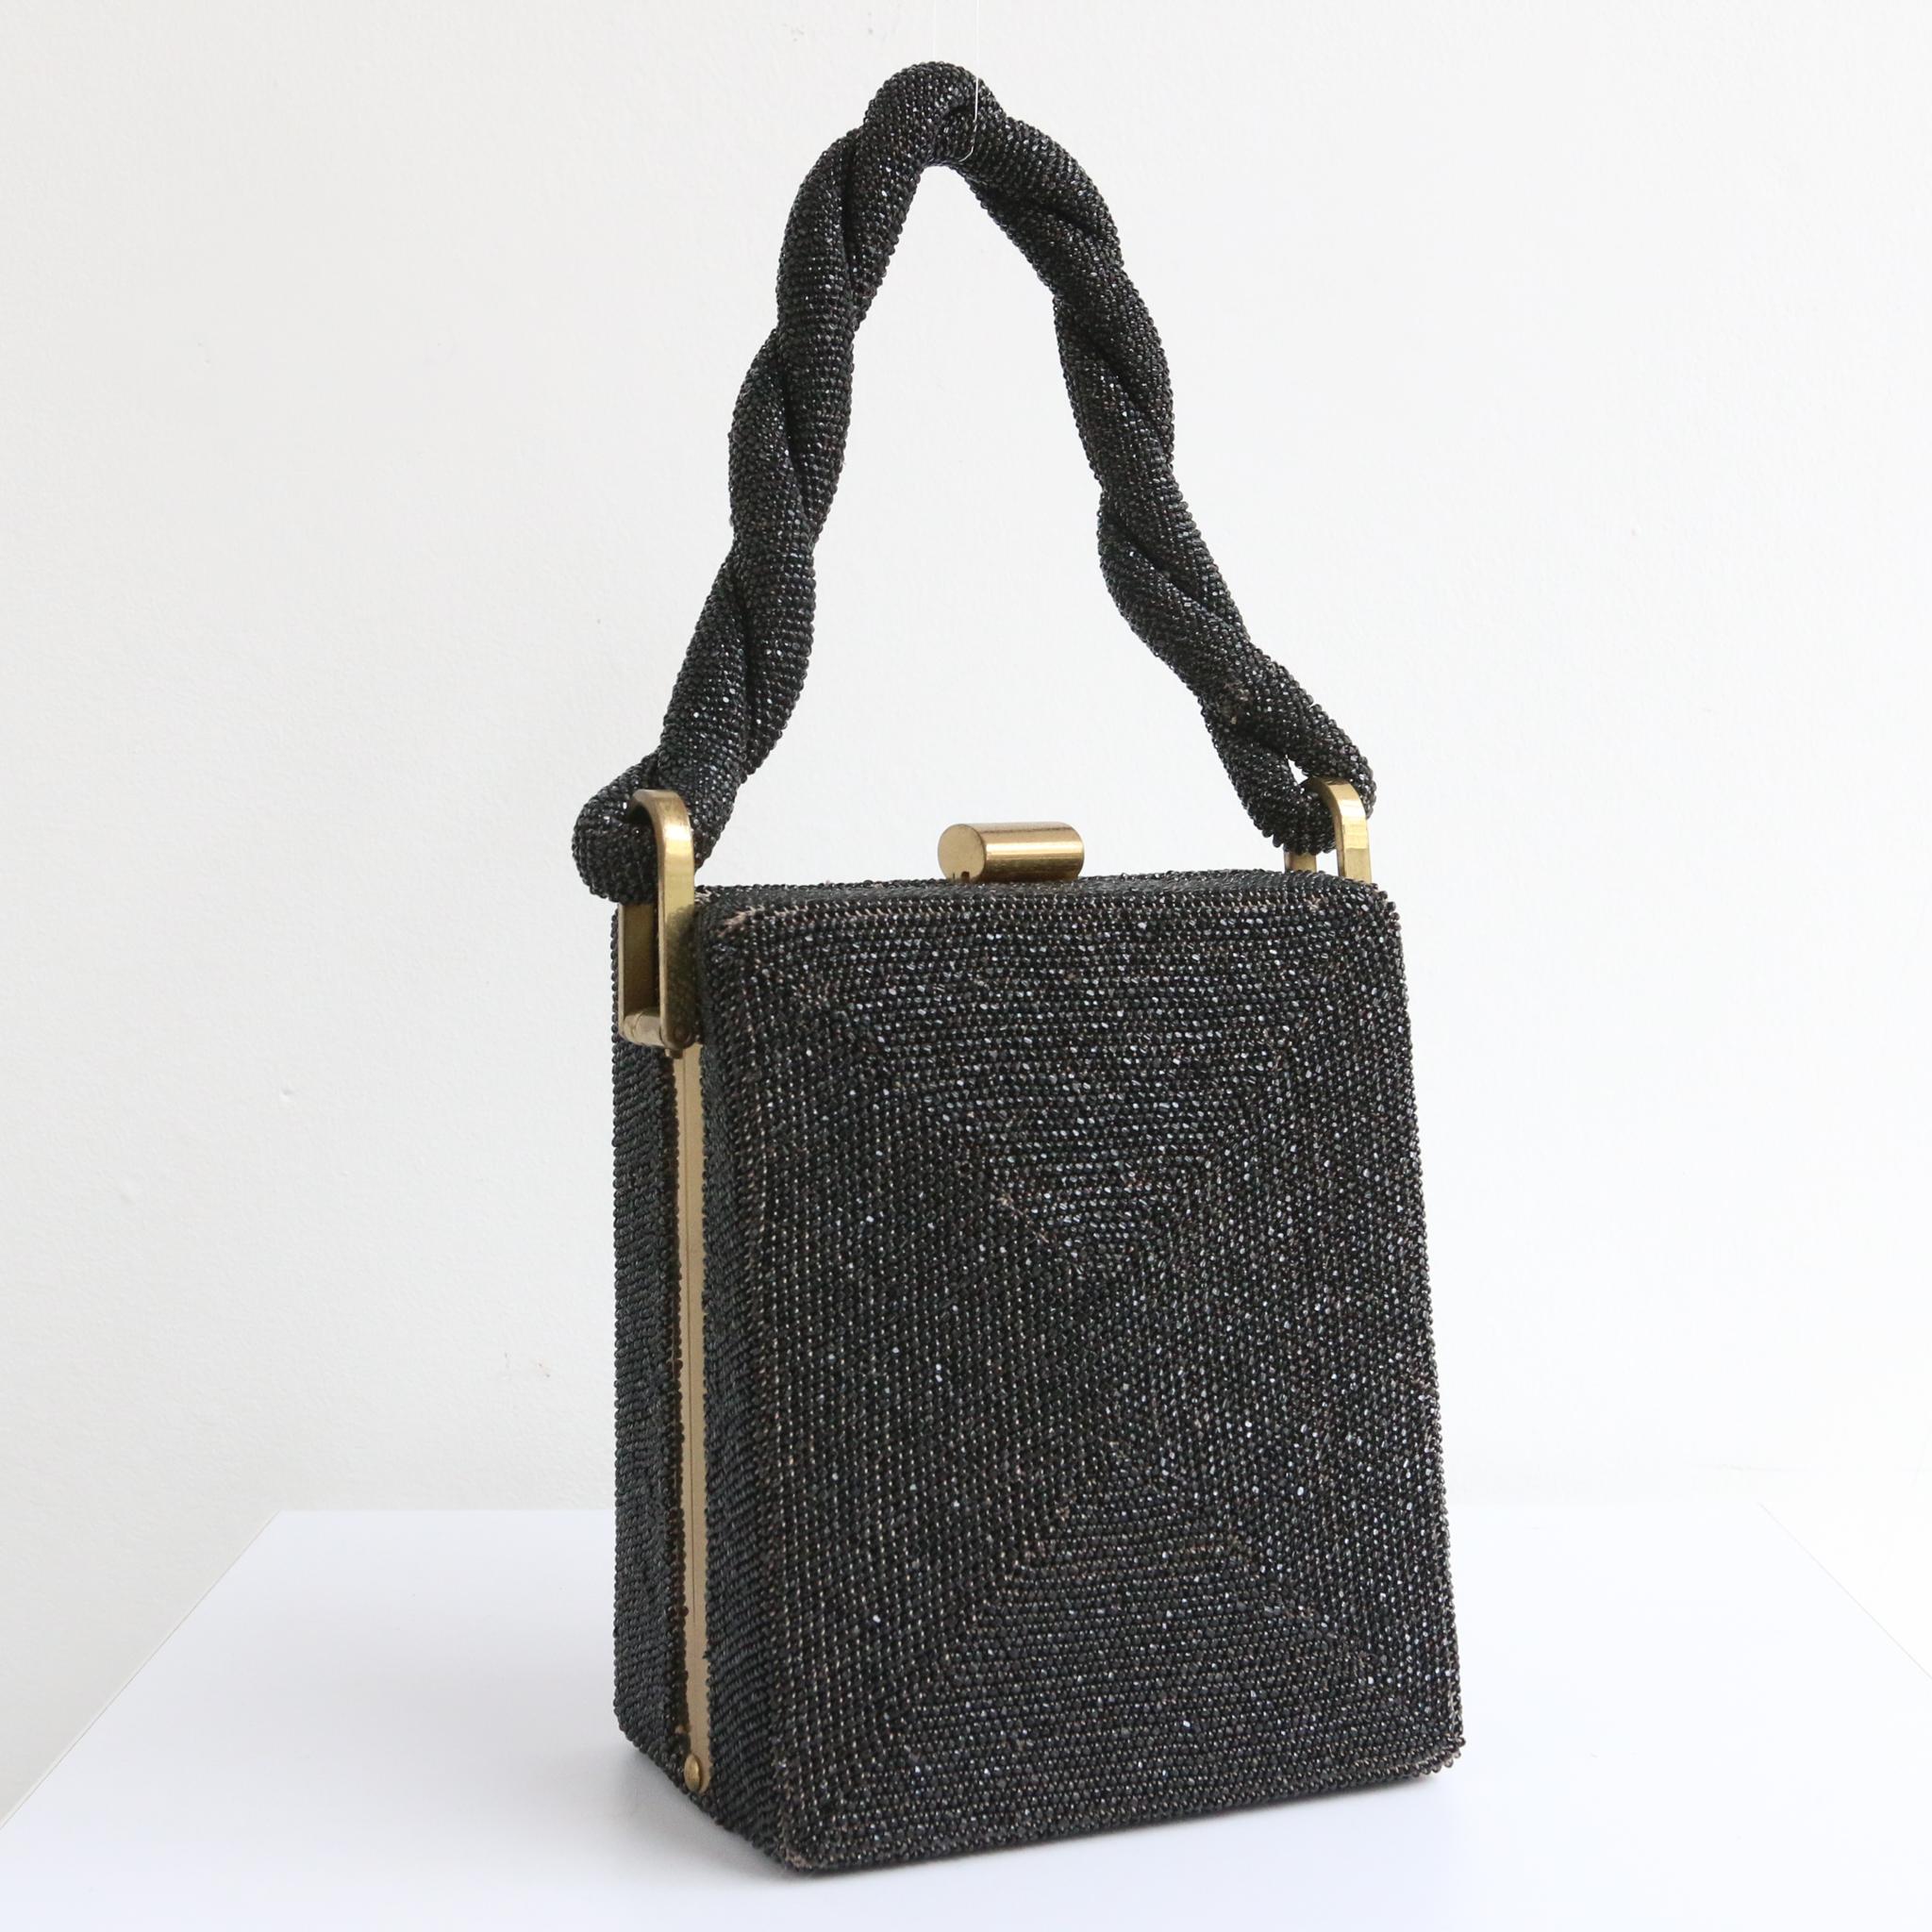 Cet époustouflant grand sac rectangulaire des années 1940, avec ses caractéristiques en métal cuivré, est la pièce finale parfaite pour votre ensemble. 
Le sac, de forme rectangulaire, renferme un extérieur de perles à facettes en verre noir, mis en